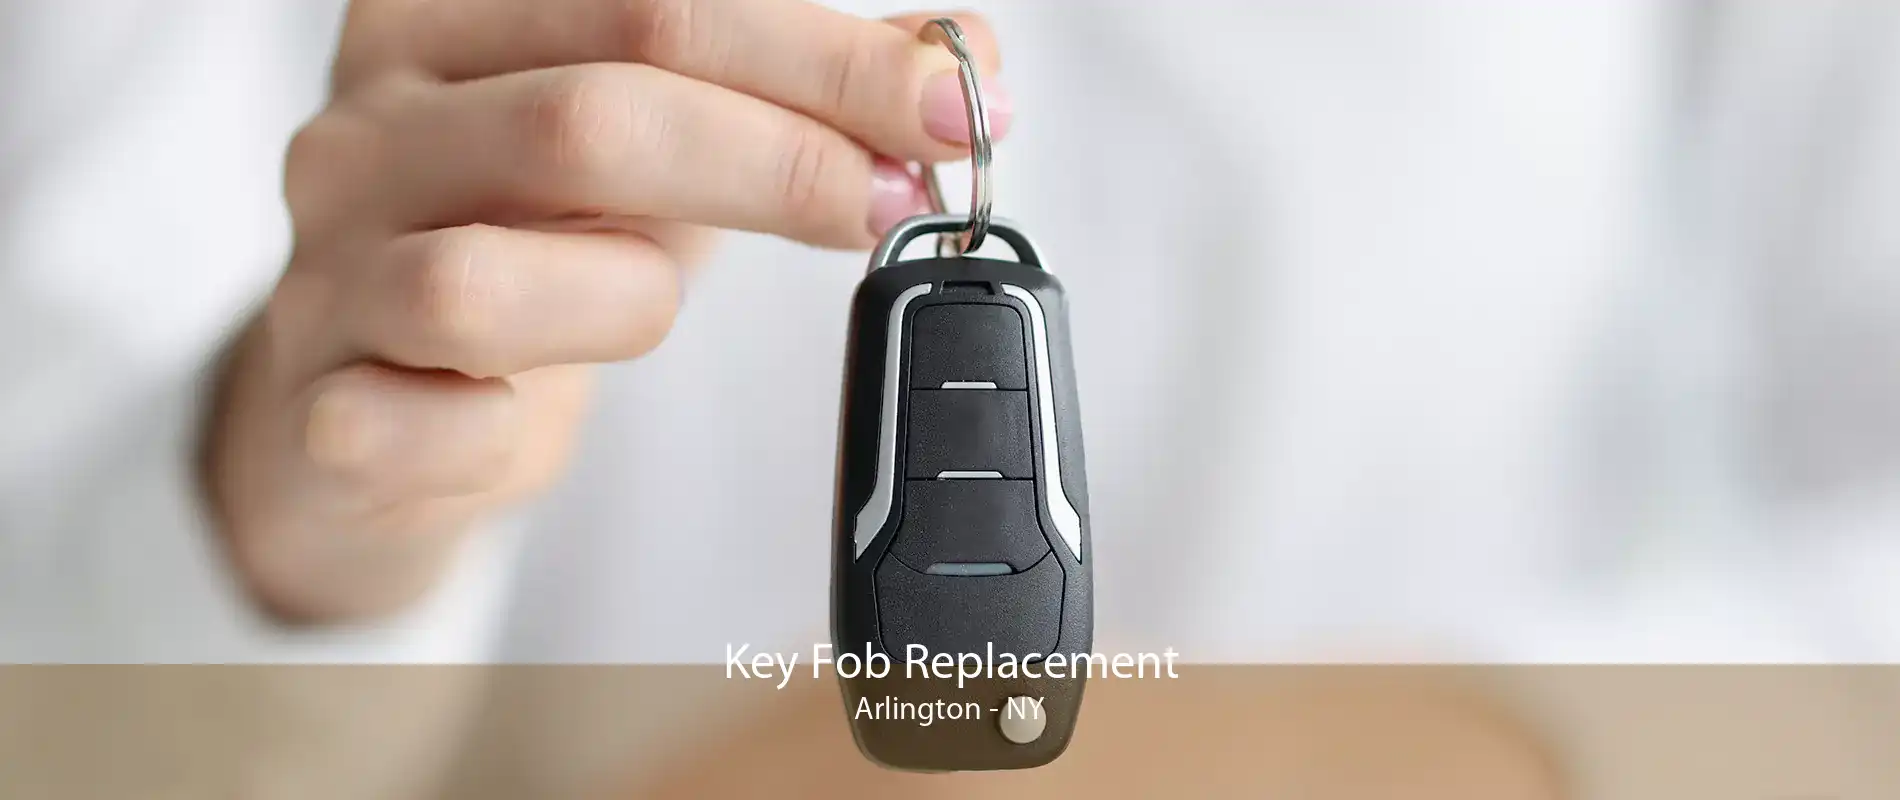 Key Fob Replacement Arlington - NY